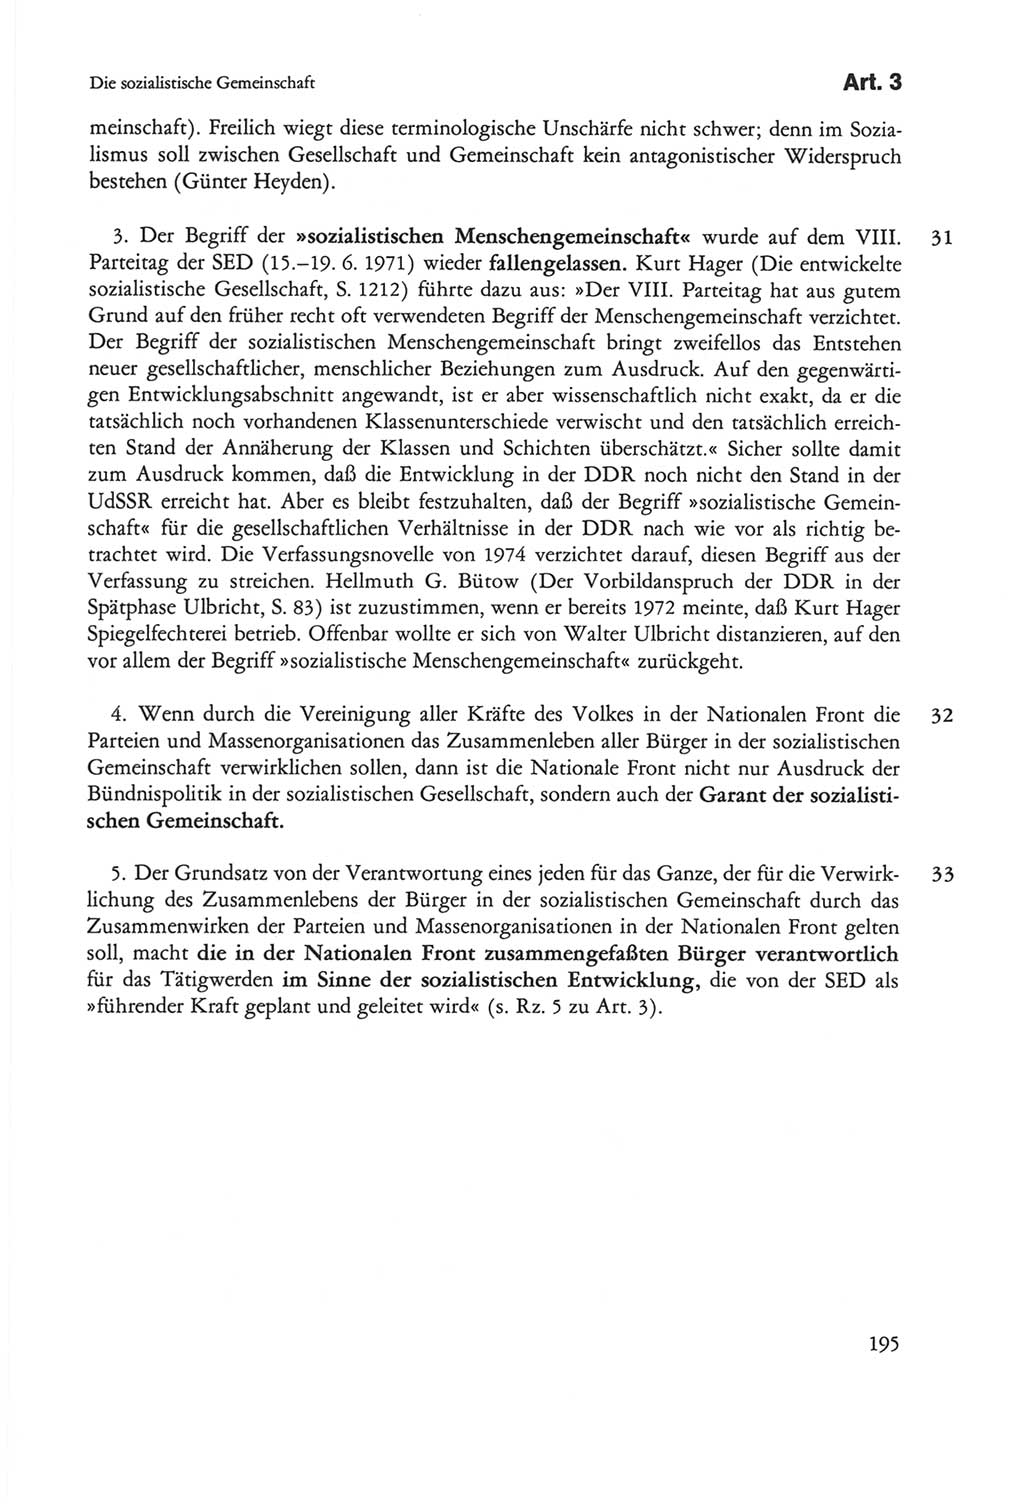 Die sozialistische Verfassung der Deutschen Demokratischen Republik (DDR), Kommentar 1982, Seite 195 (Soz. Verf. DDR Komm. 1982, S. 195)